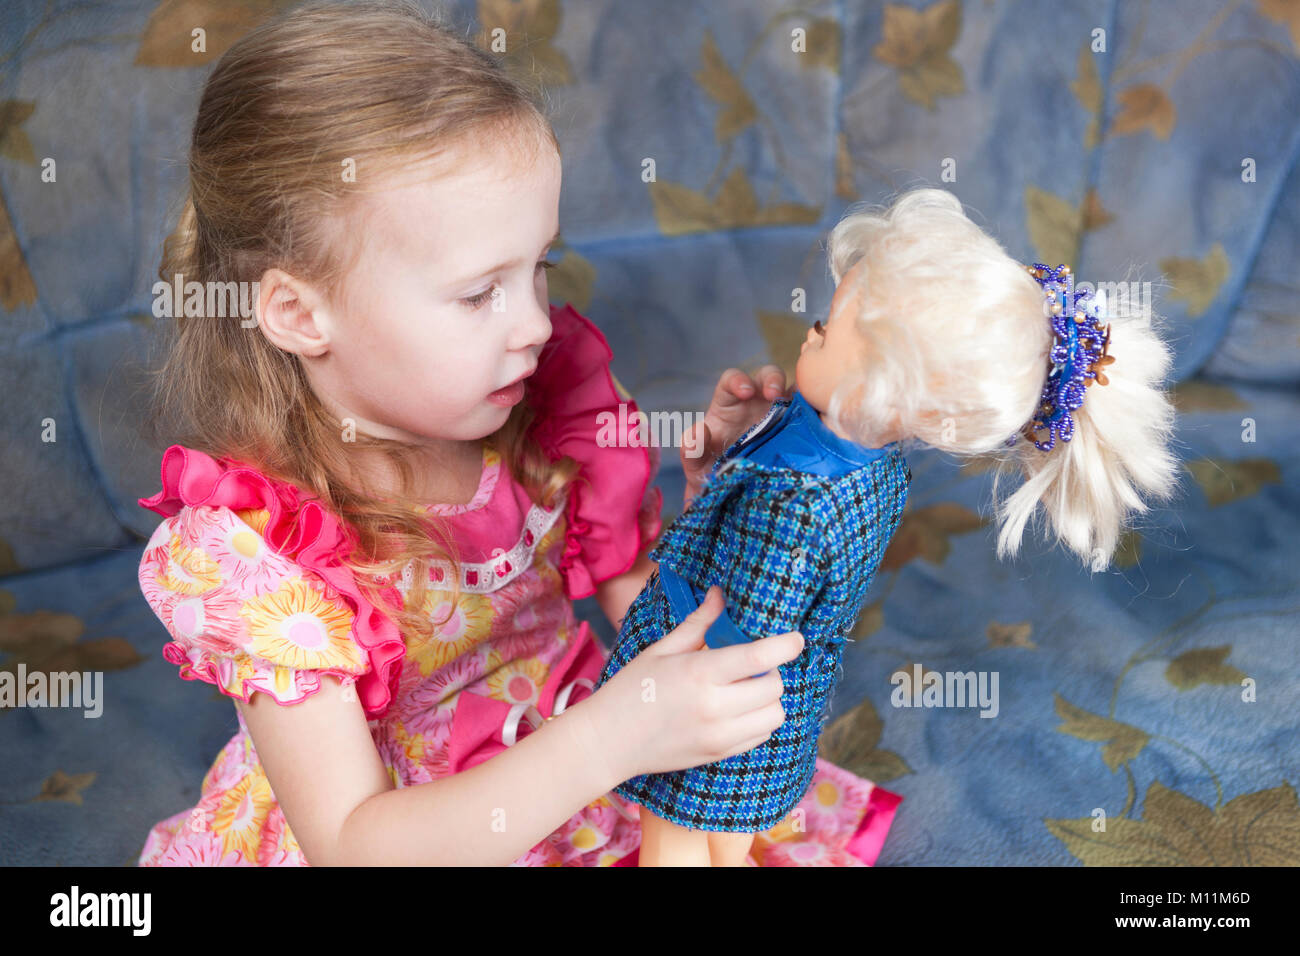 Куклы какие играют девочки. Куклы для девочек. Маленькая девочка с куклой. Куклы наряжать для девочек. Ребенок играющий в куклы.